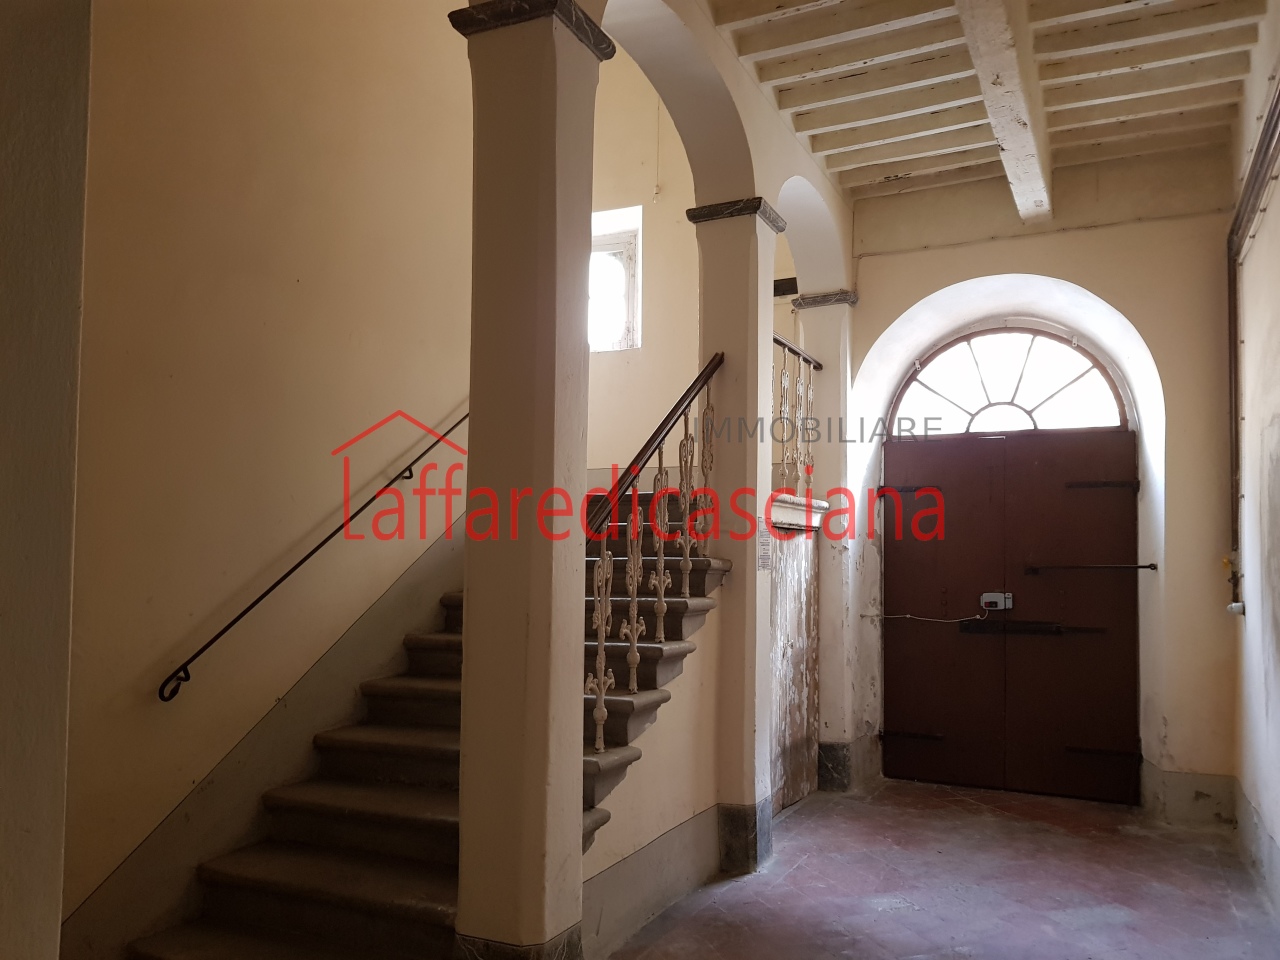 Appartamento in vendita a Casciana Terme Lari, 3 locali, prezzo € 65.000 | PortaleAgenzieImmobiliari.it